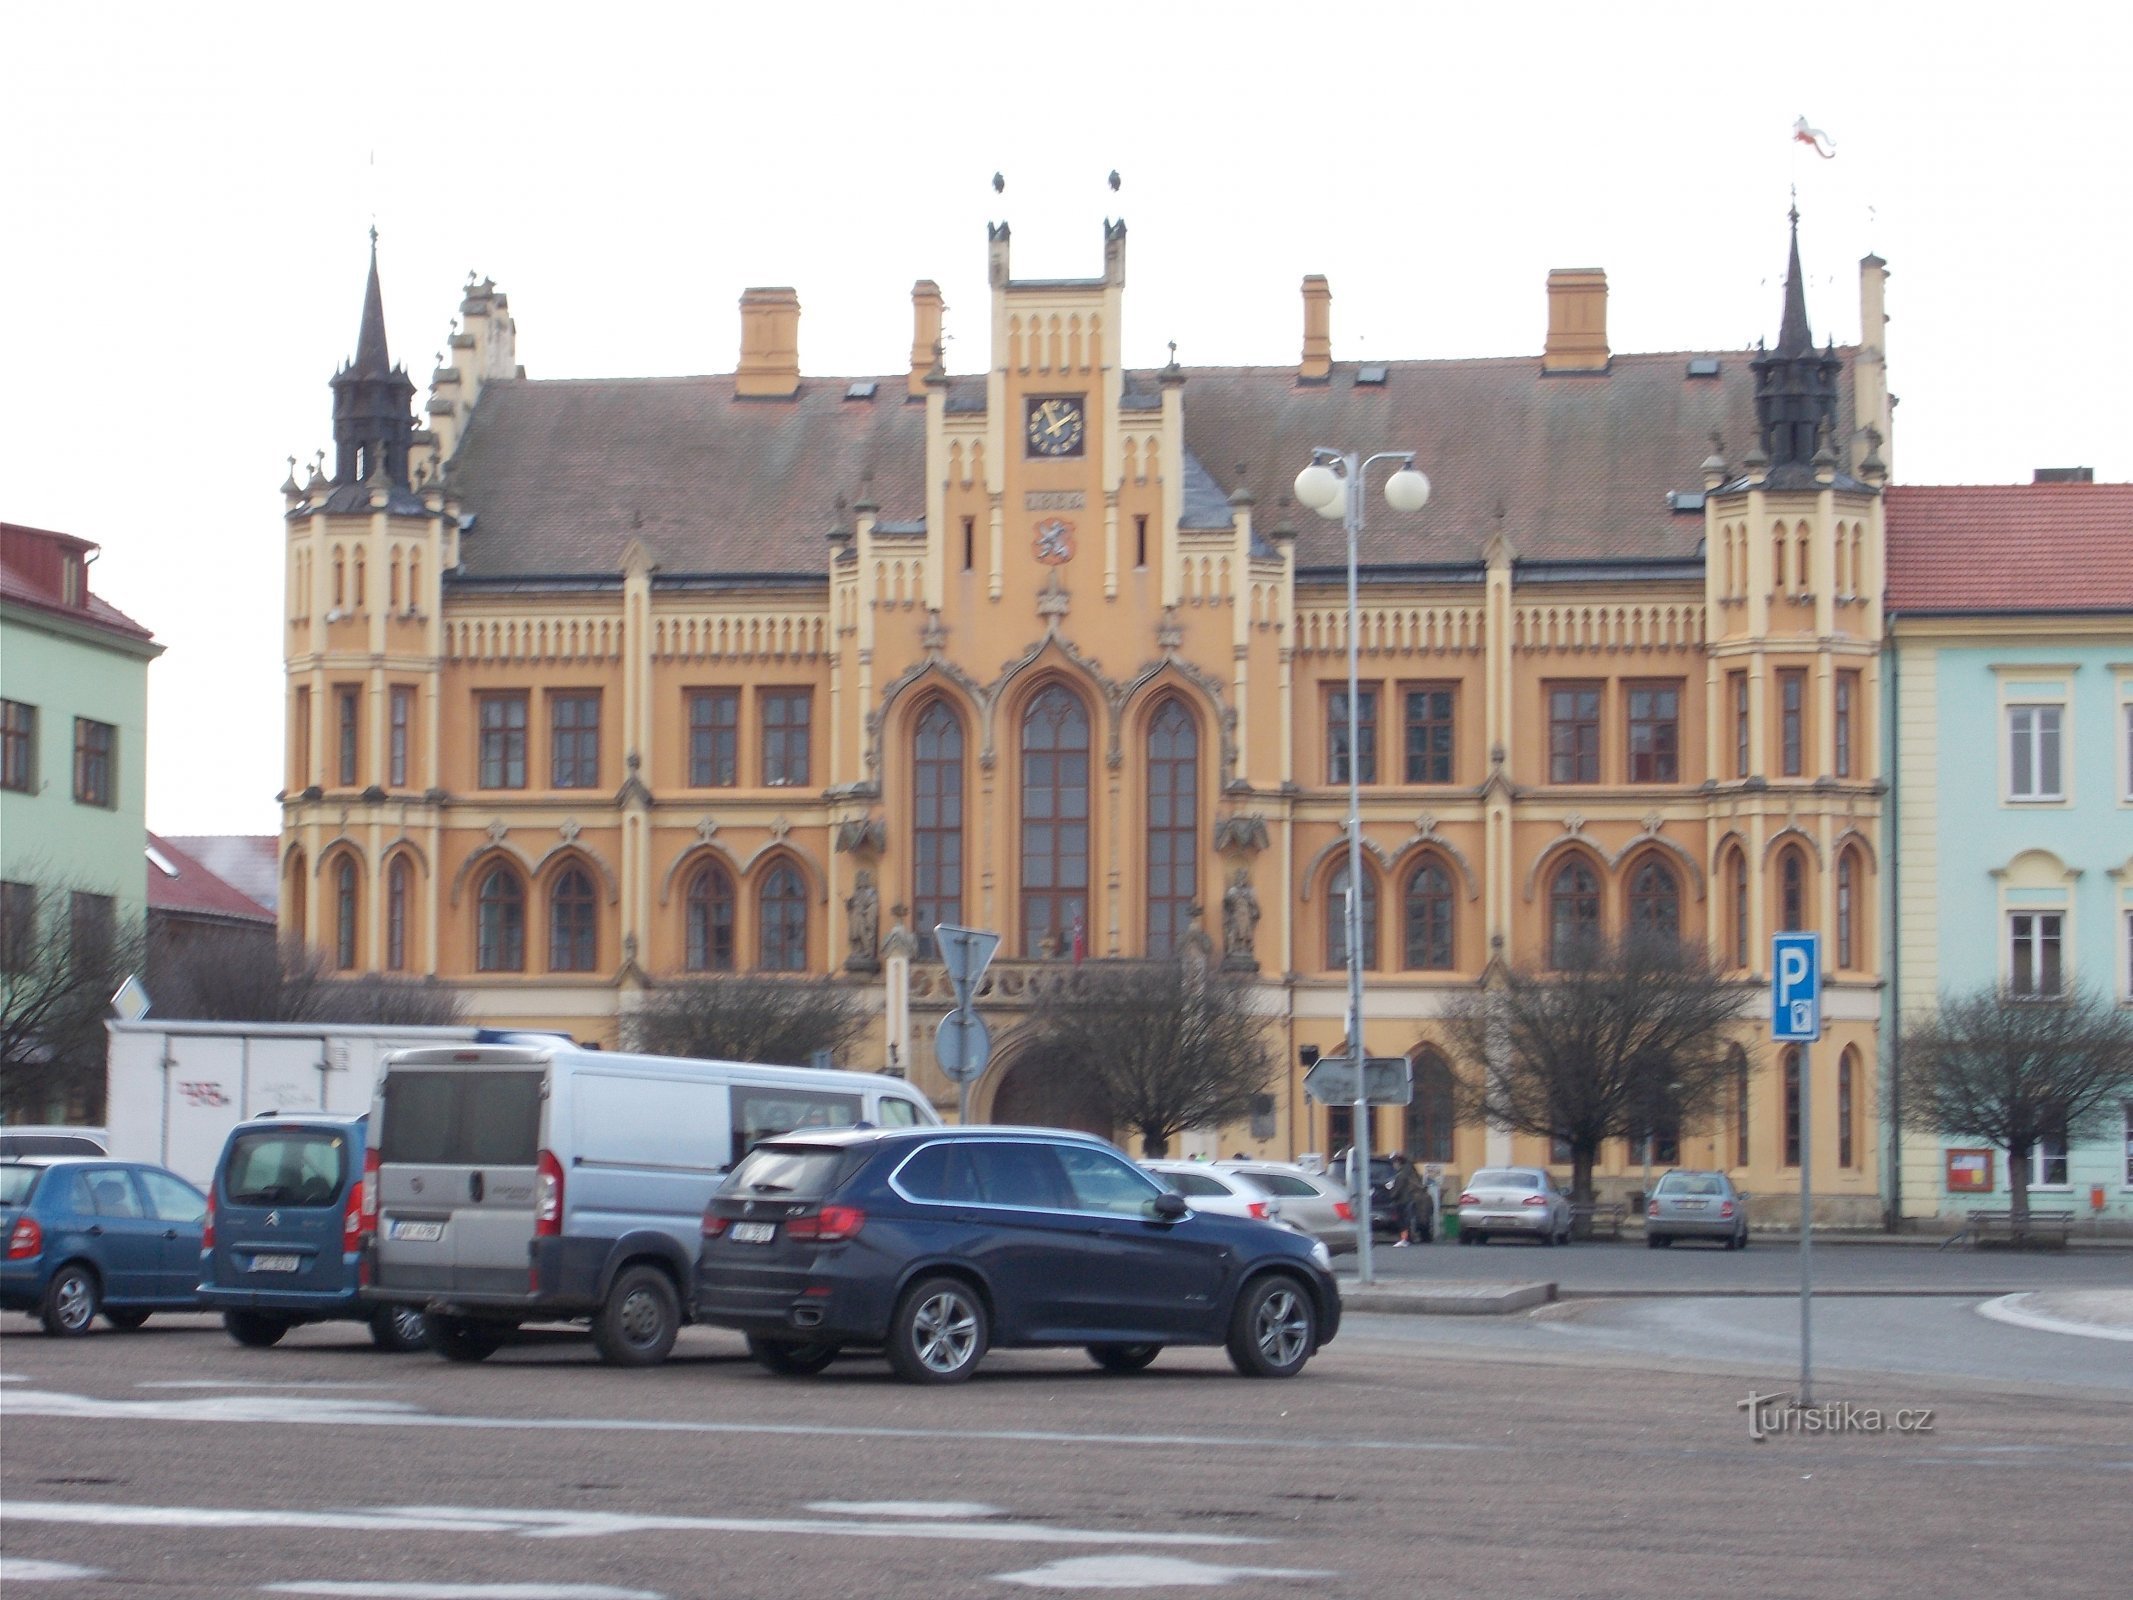 Nový Bydžov - town hall